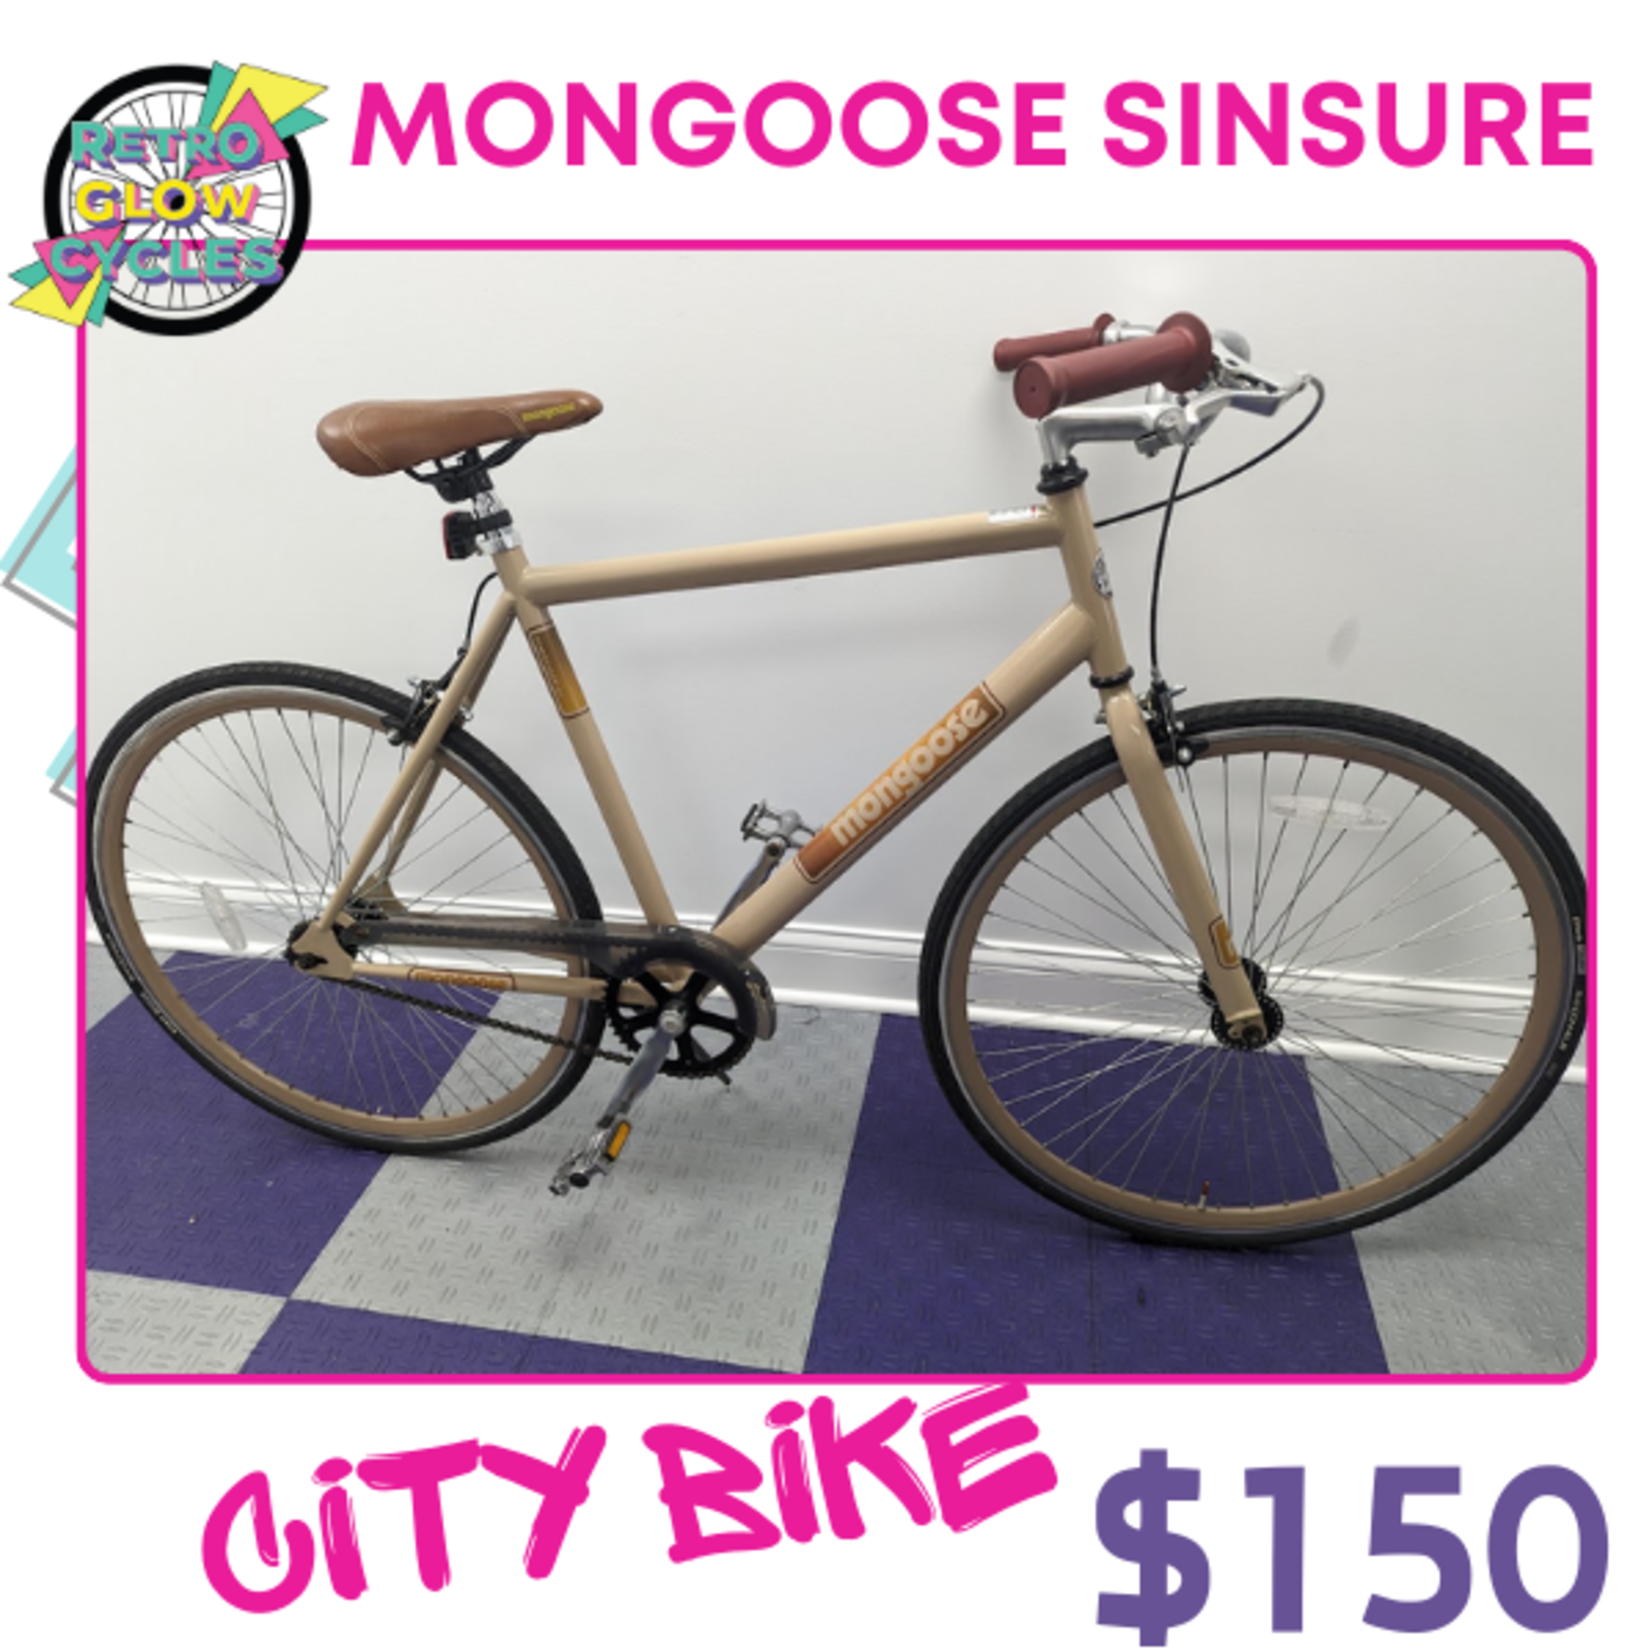 Mongoose Mongoose Sinsure Single Speed bike